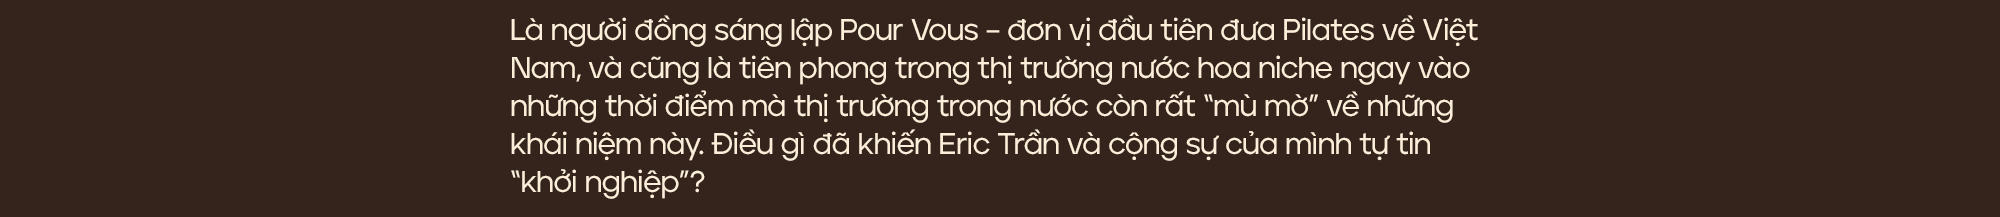 Doanh nhân – Chuyên gia nước hoa Eric Trần: “Khách hàng chỉ là số 2 thôi, bản thân tôi mới là số 1” - Ảnh 4.